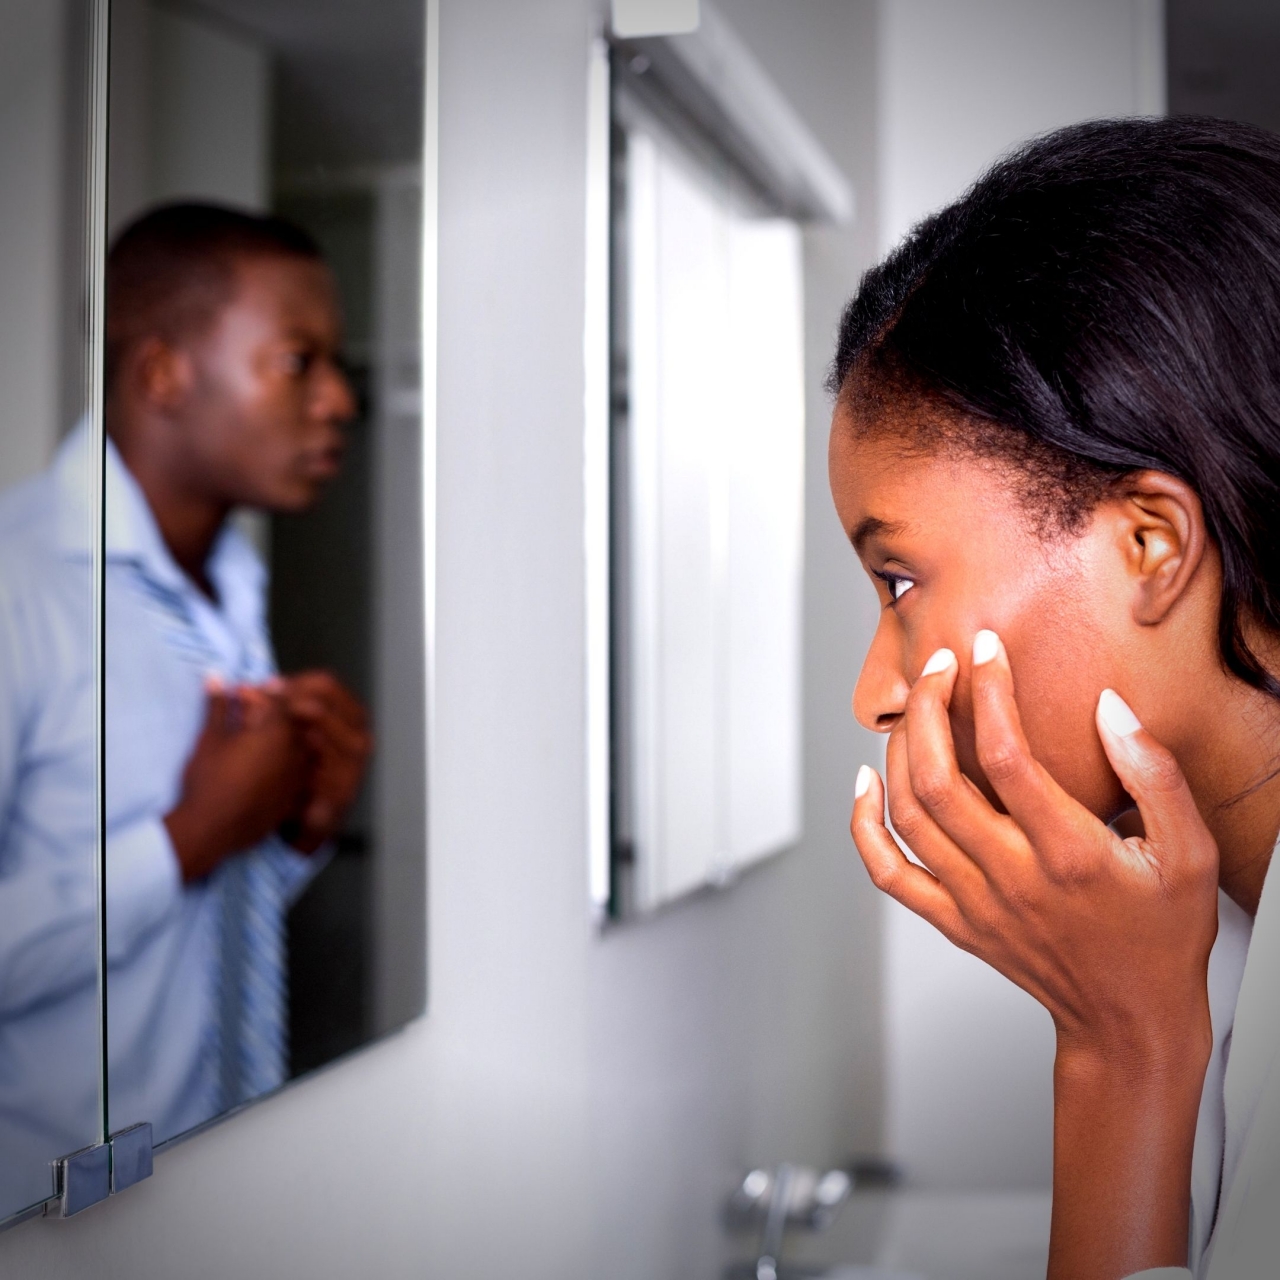 Foto de uma mulher negra, com uma das mãos no rosto, que olha para um espelho que está na sua frente. Ele reflete a imagem de um homem sério, que usa uma blusa social e está com as mãos na blusa, perto da gola.